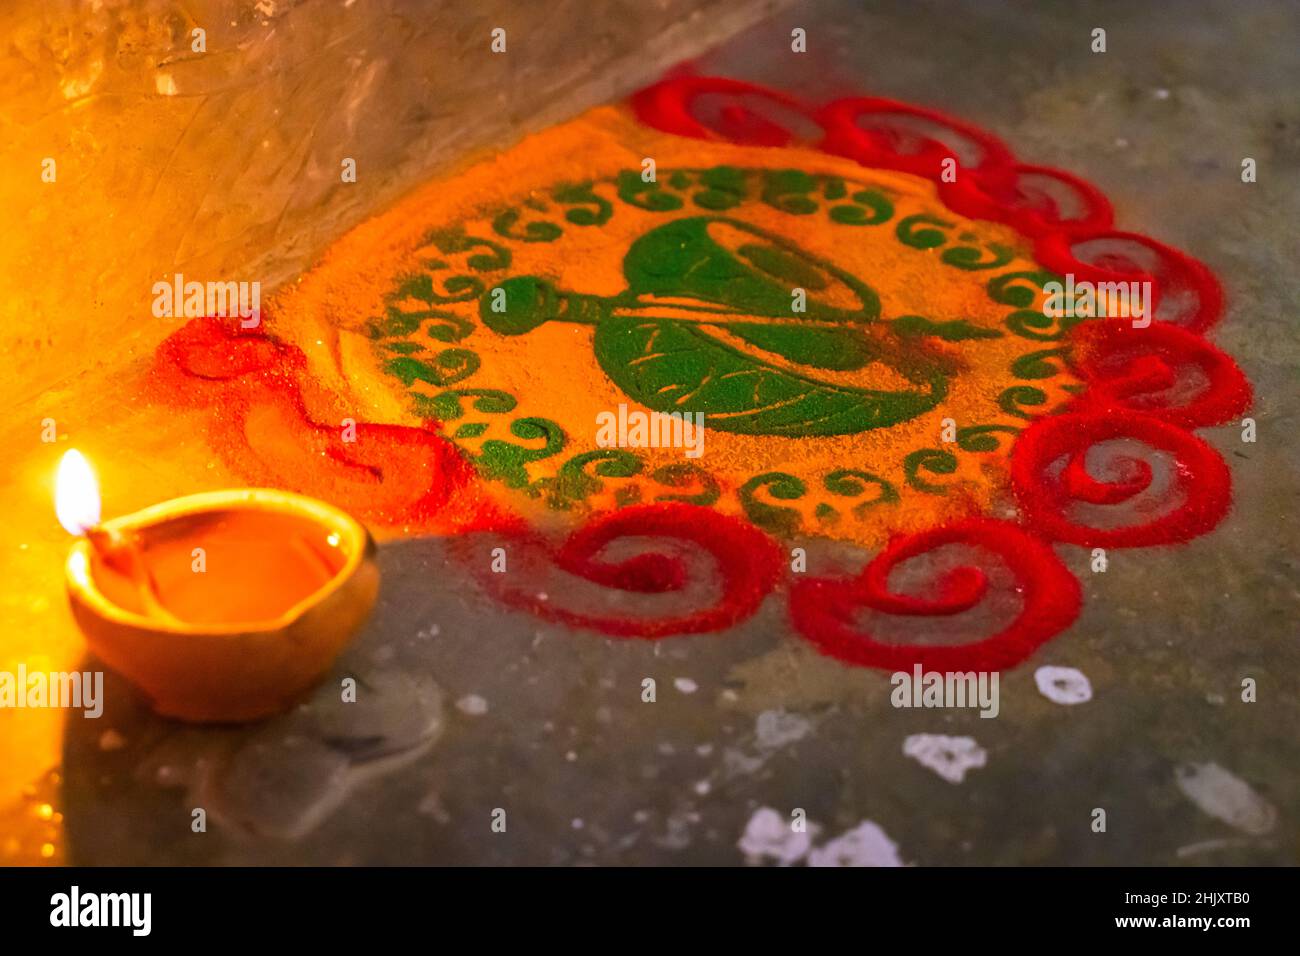 indische traditionelle Rangoli anlässlich der Festfeier aus verschiedenen Blickwinkeln Stockfoto